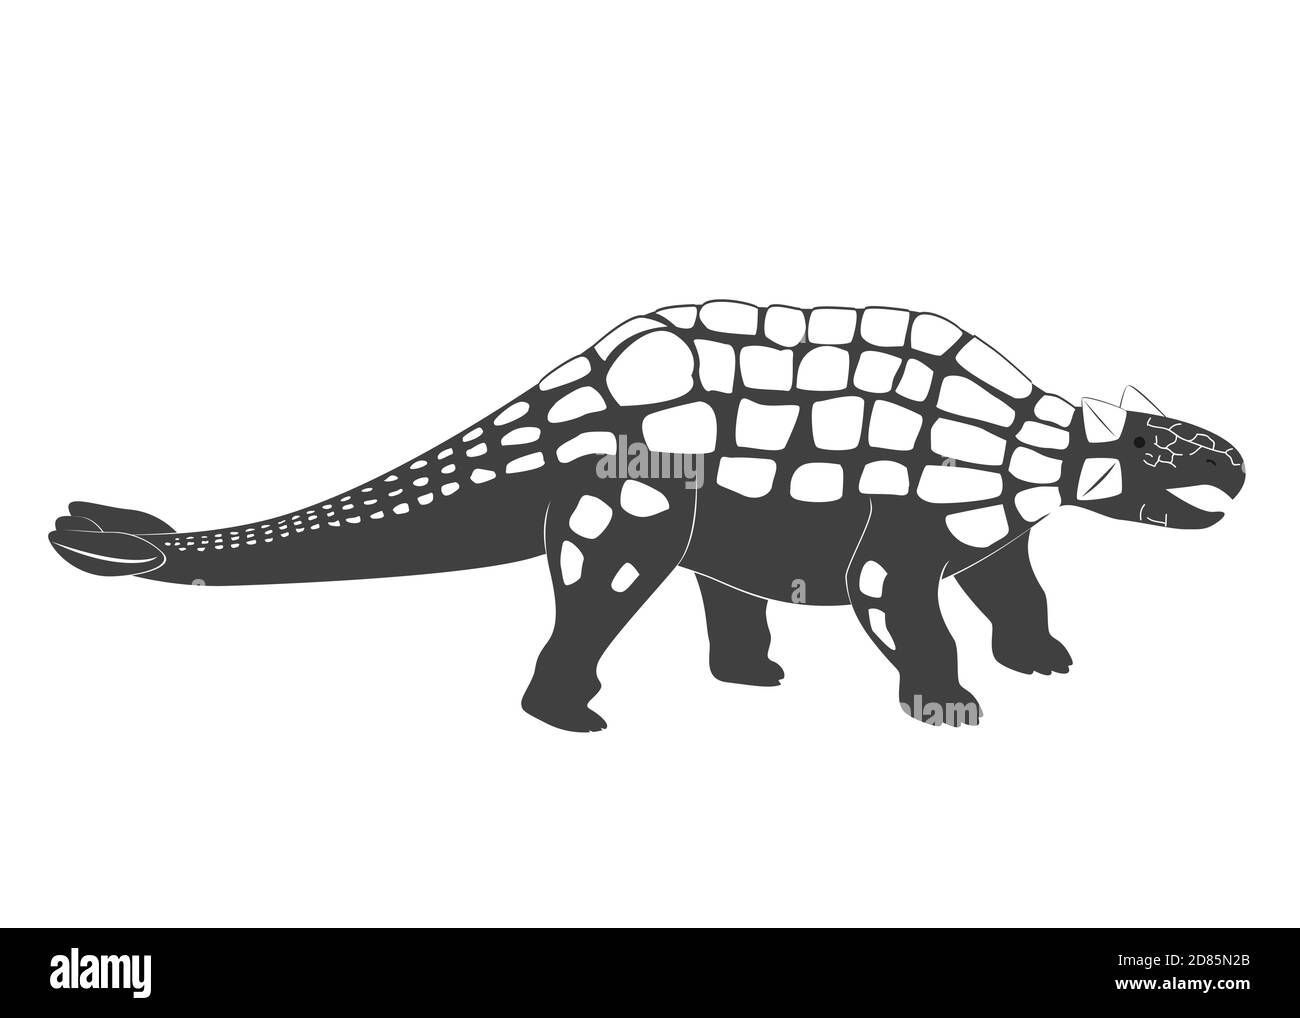 Petit bébé de dessin animé d'Ankylosaurus. Icône de dinosaure de la période jurassique isolée sur une illustration blanche du vecteur Ankylosaurus Illustration de Vecteur